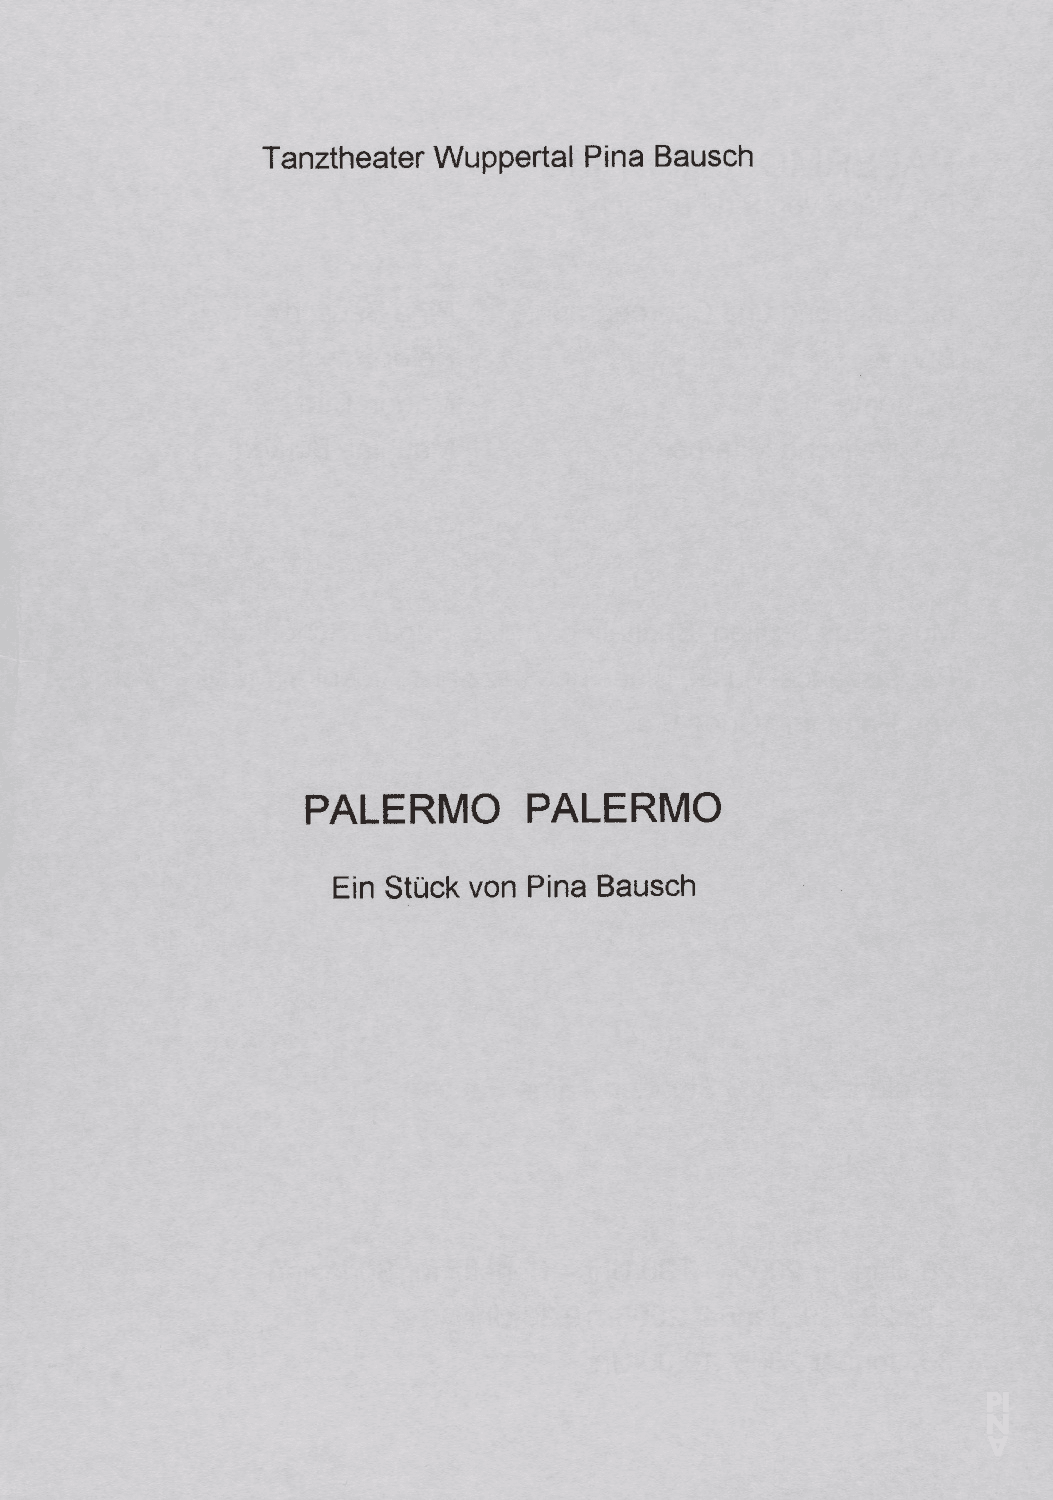 Abendzettel zu „Palermo Palermo“ von Pina Bausch mit Tanztheater Wuppertal in Wuppertal, 26.01.2005–30.01.2005